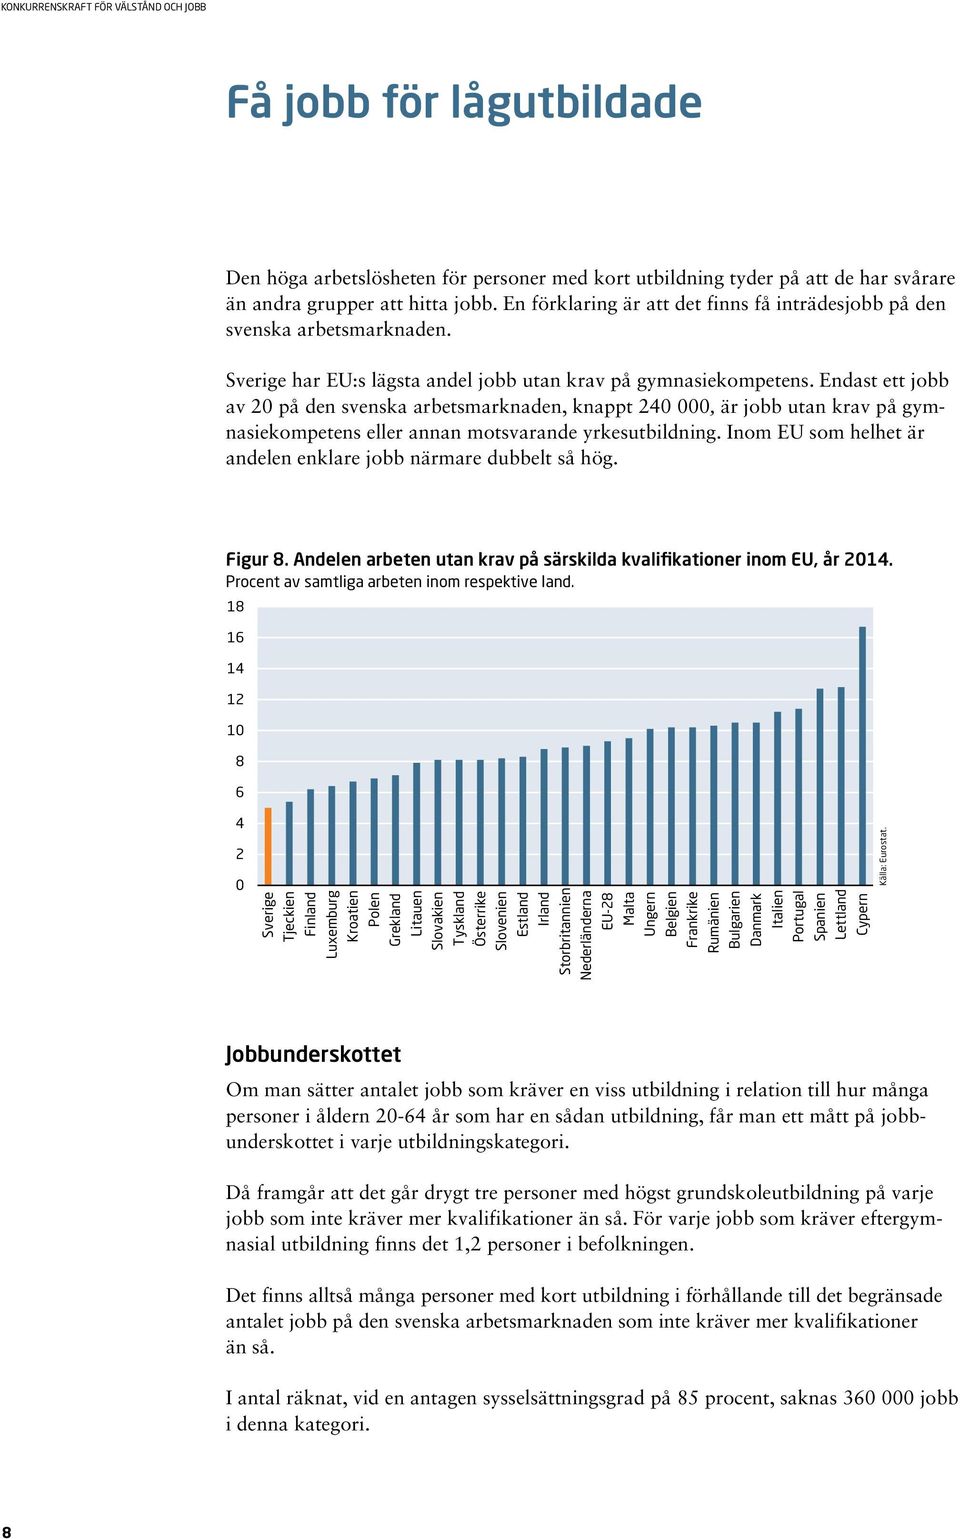 Endast ett jobb av 20 på den svenska arbetsmarknaden, knappt 240 000, är jobb utan krav på gymnasiekompetens eller annan motsvarande yrkesutbildning.